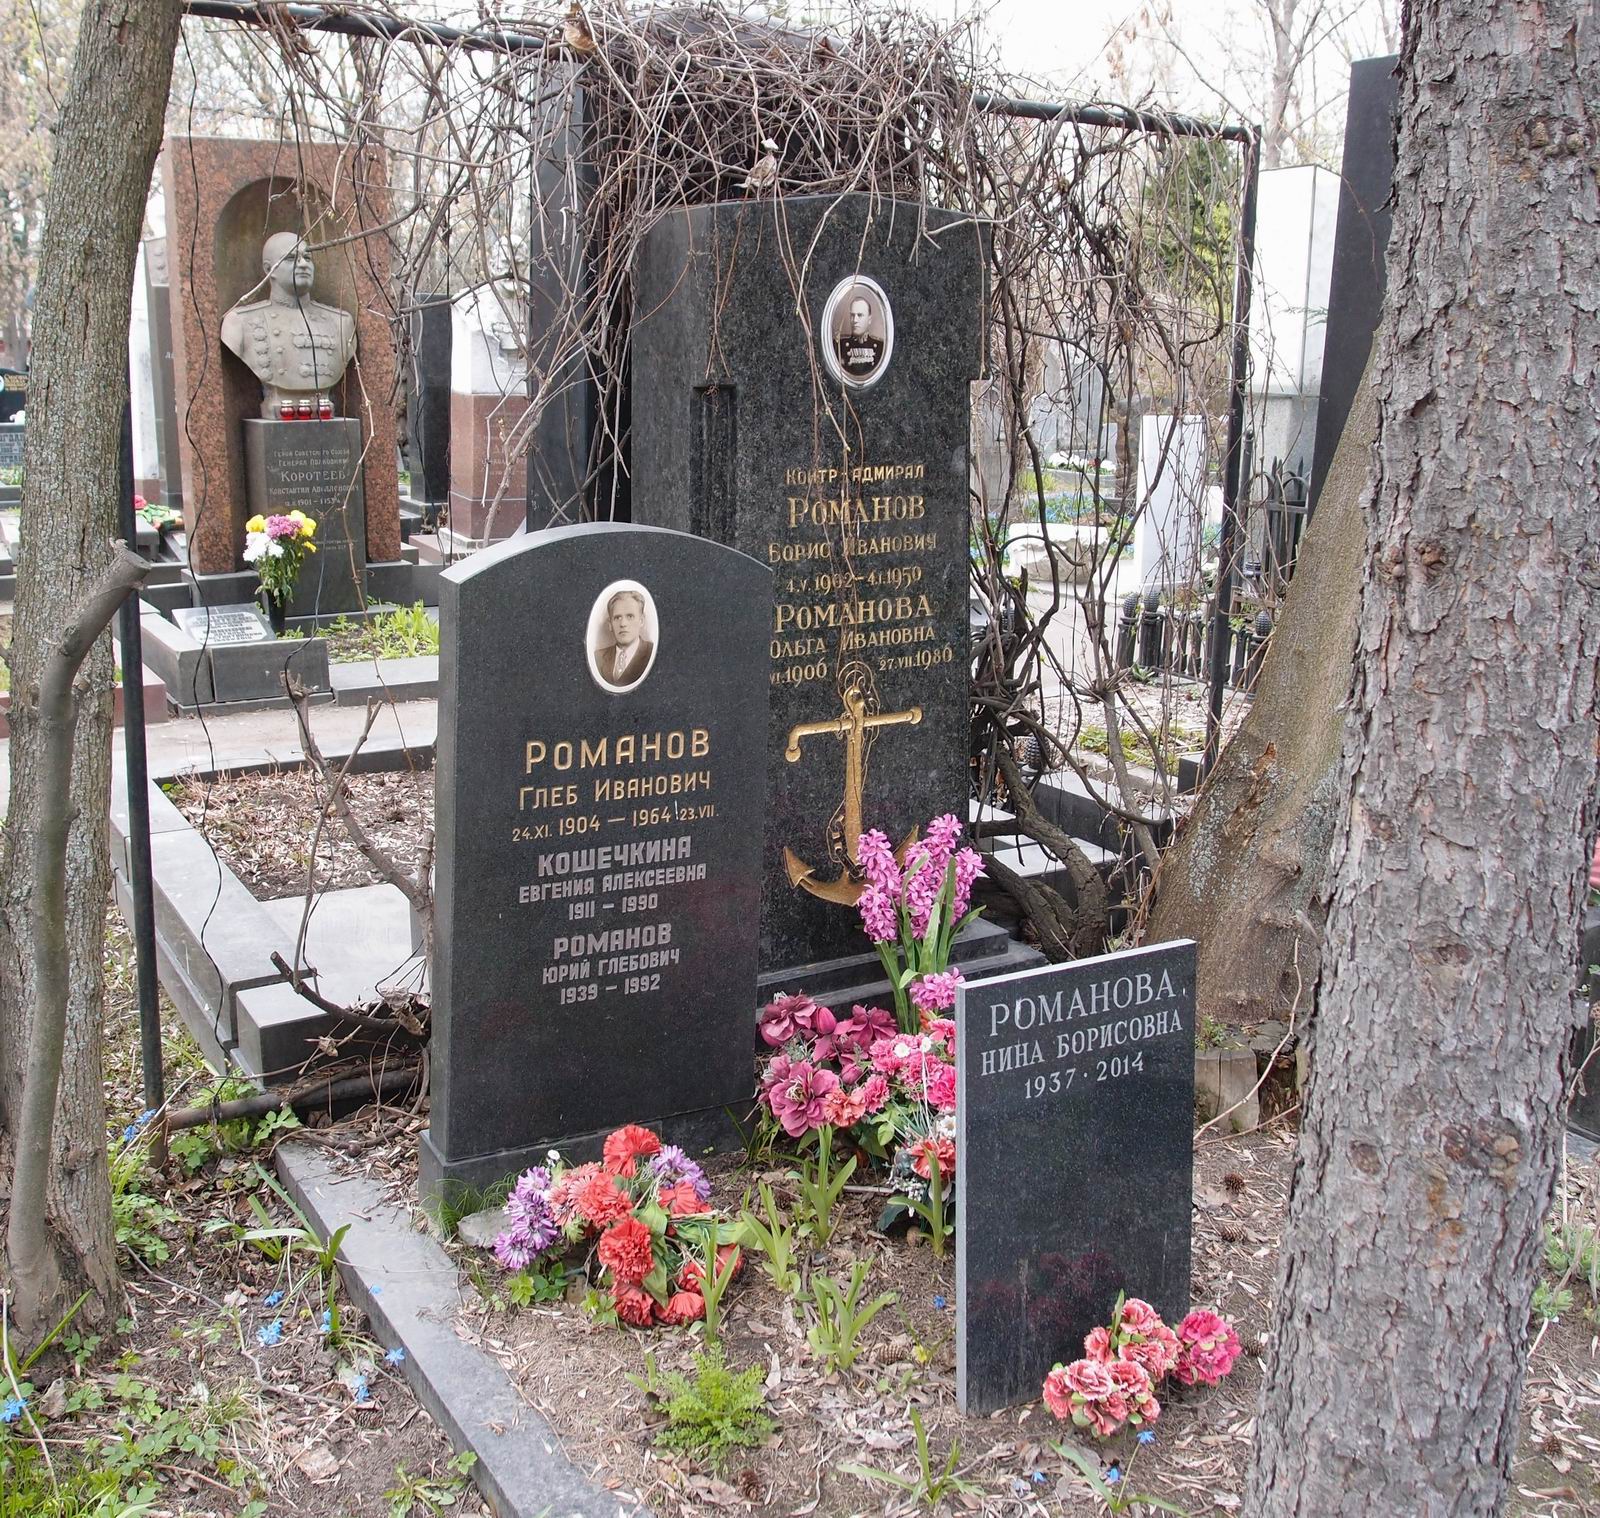 Памятник на могиле Романова Б.И. (1902-1950), на Новодевичьем кладбище (4-20-17).